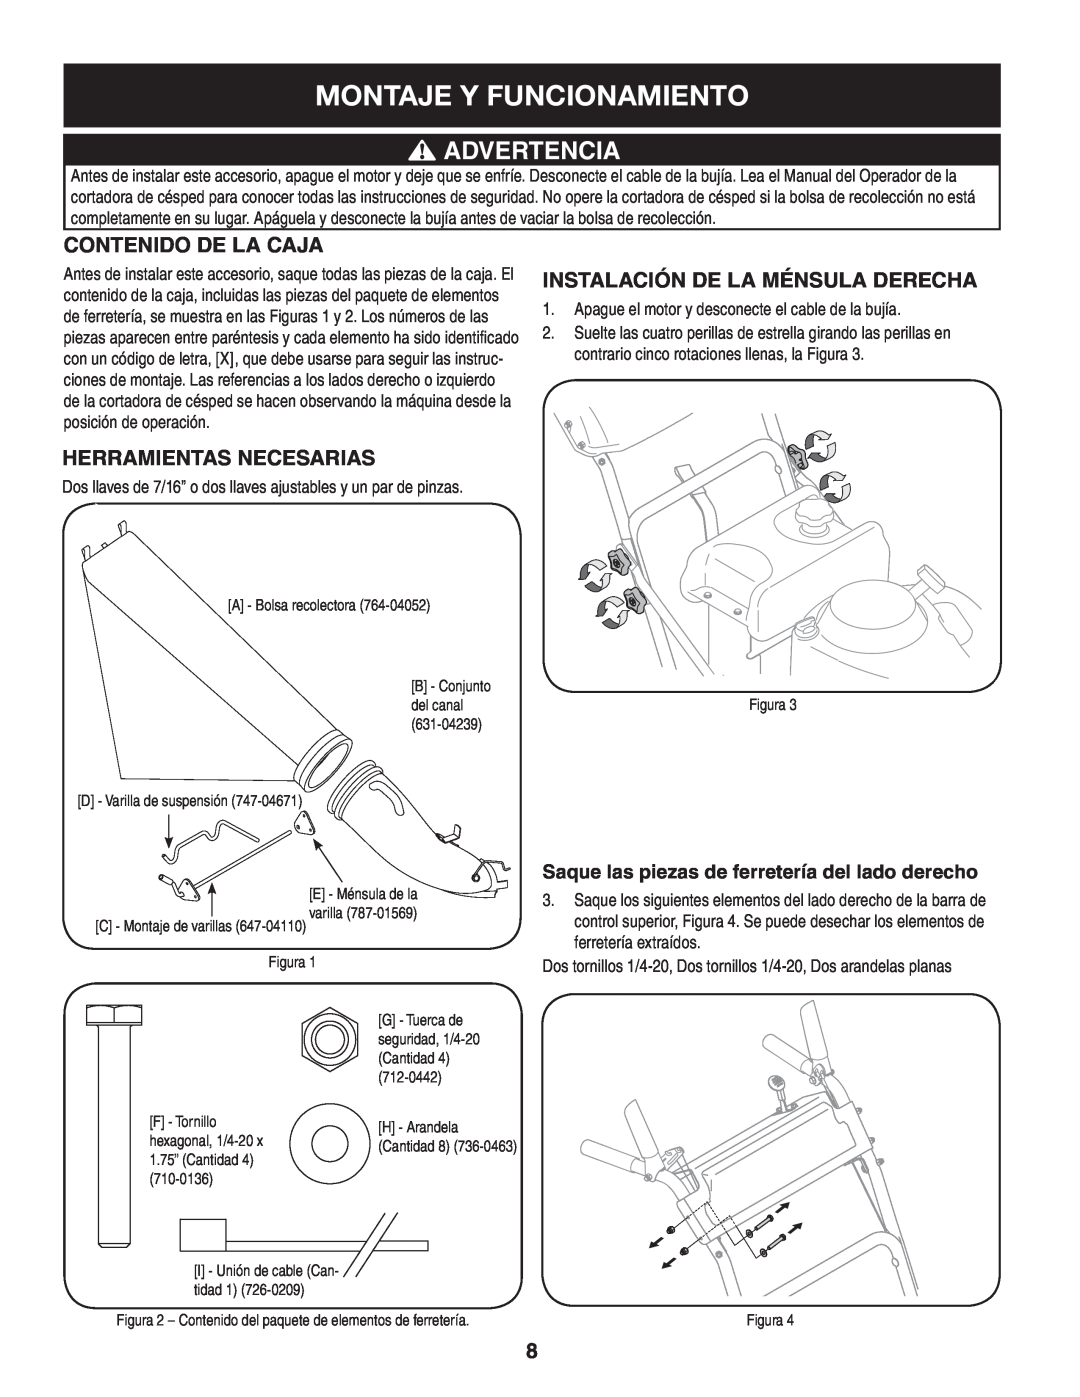 Craftsman 33731 Montaje Y Funcionamiento, Advertencia, Contenido De La Caja, Herramientas Necesarias, Figura, 710-0136 